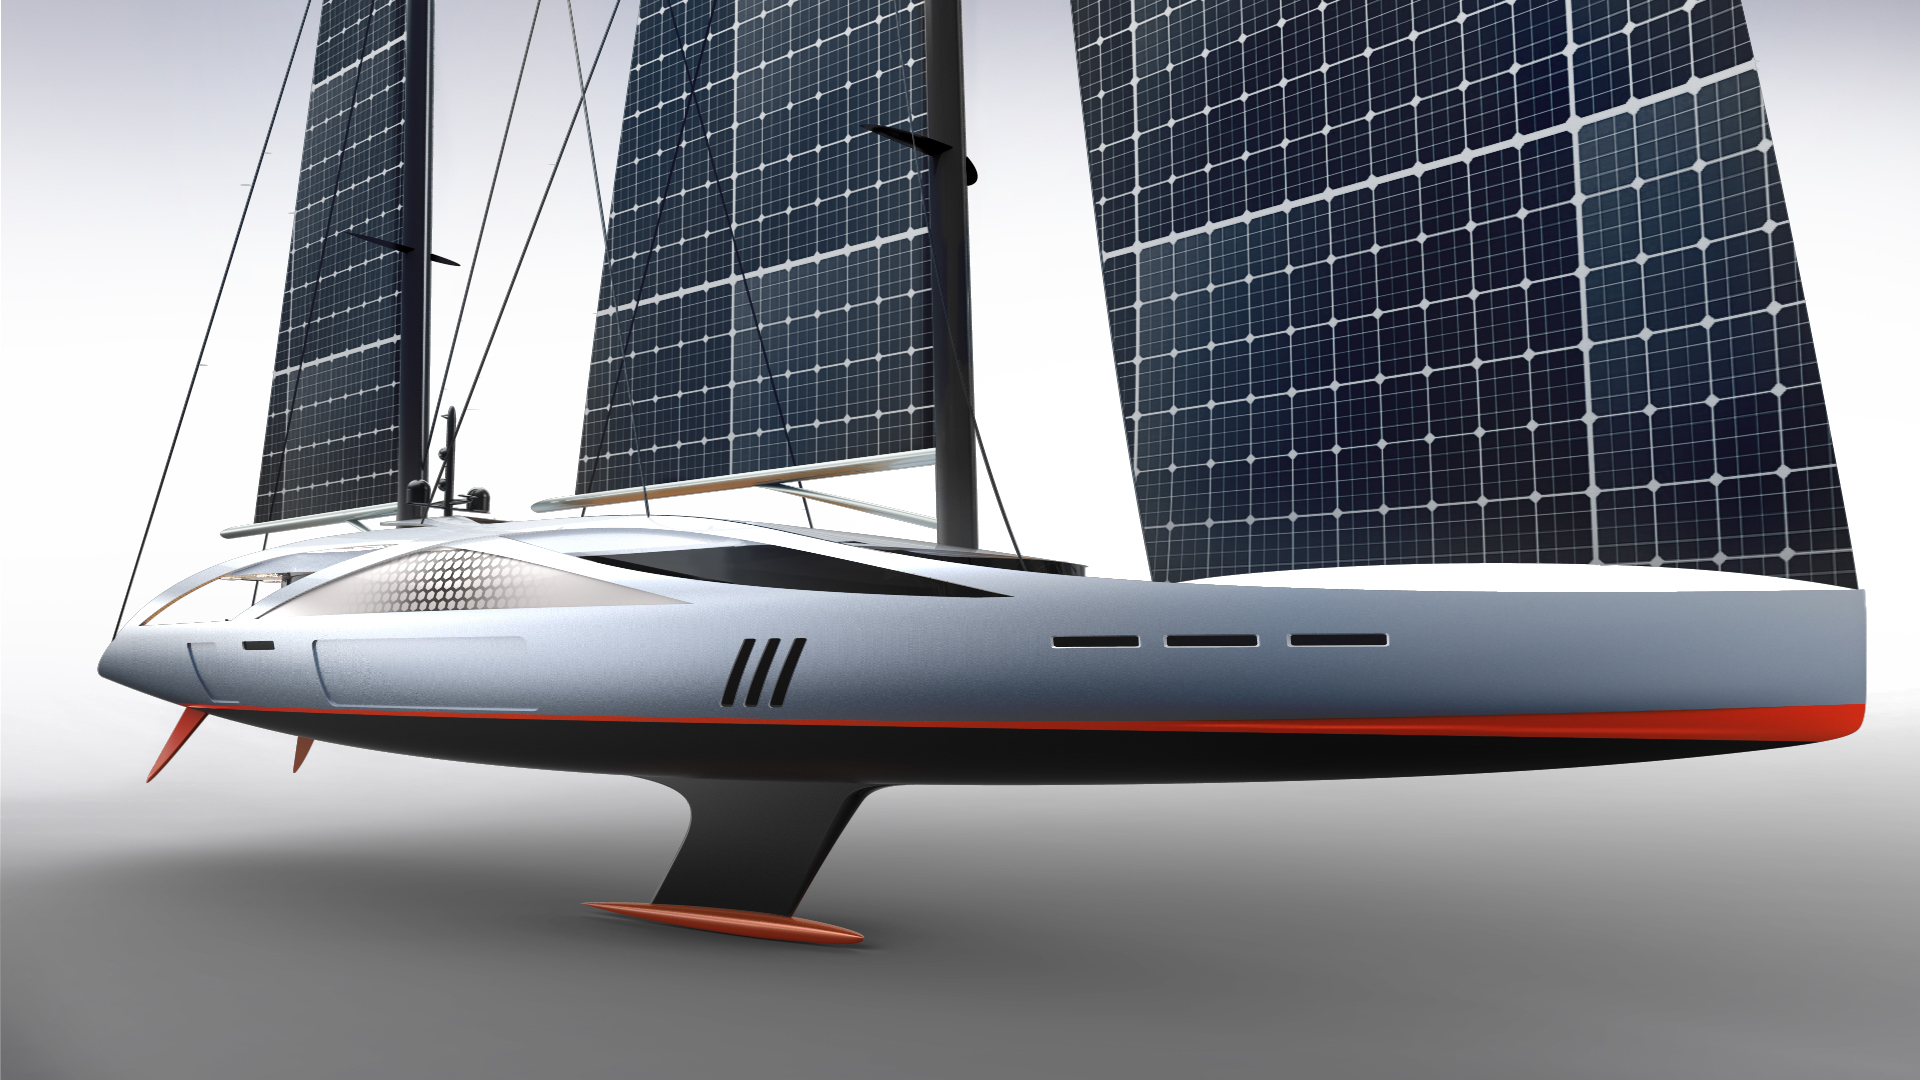 Solar sailing. Яхта Aquila. Концепт парусной яхты c300. Yacht Phoenicia II Concept. Solar — 106-метровой парусной яхты.